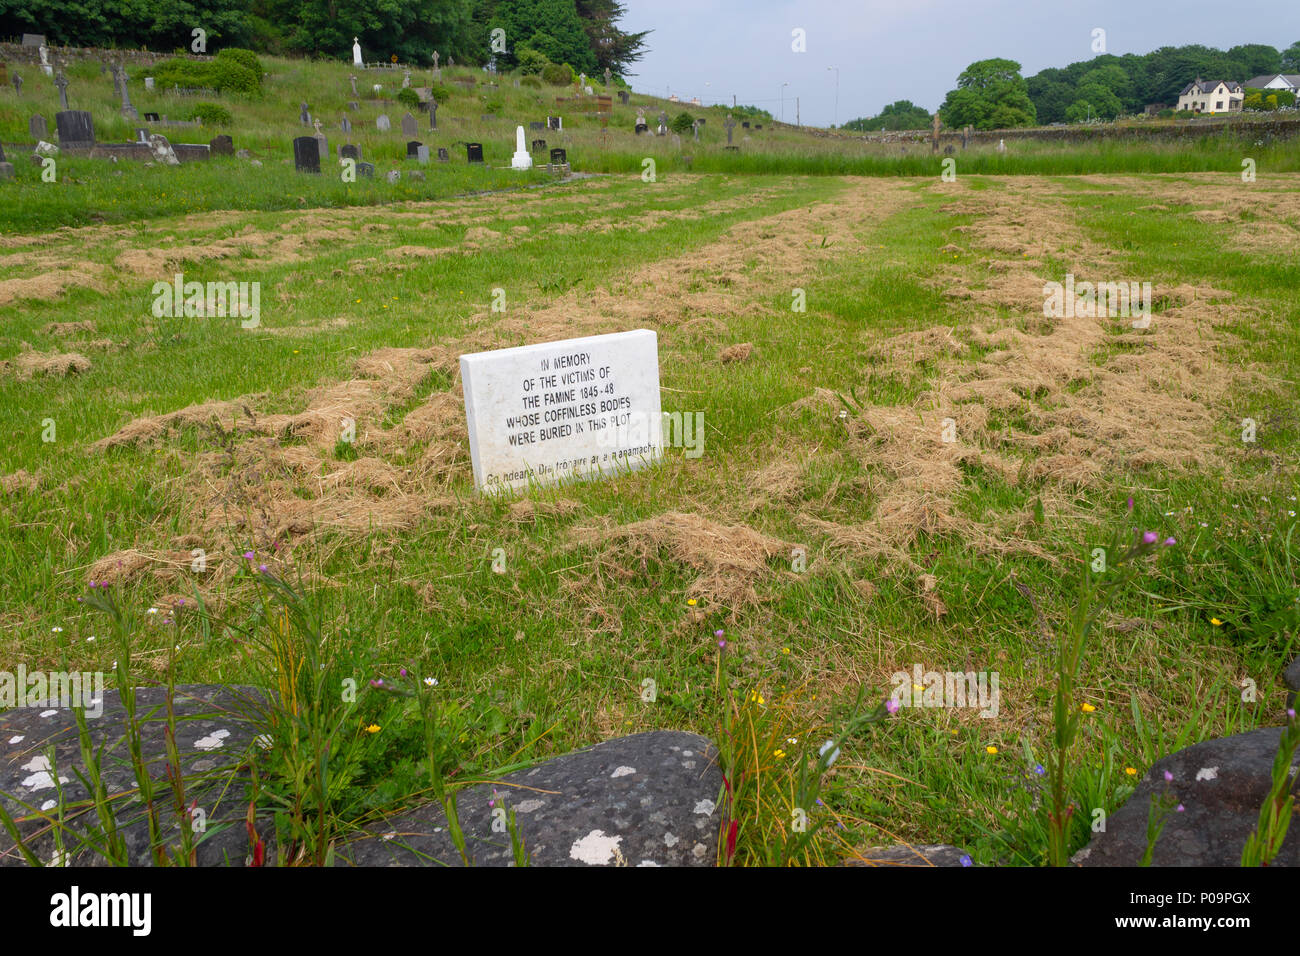 La carestia irlandese luogo di sepoltura con targhe commemorative al cimitero abbeystrewry skibbereen, Irlanda. Foto Stock